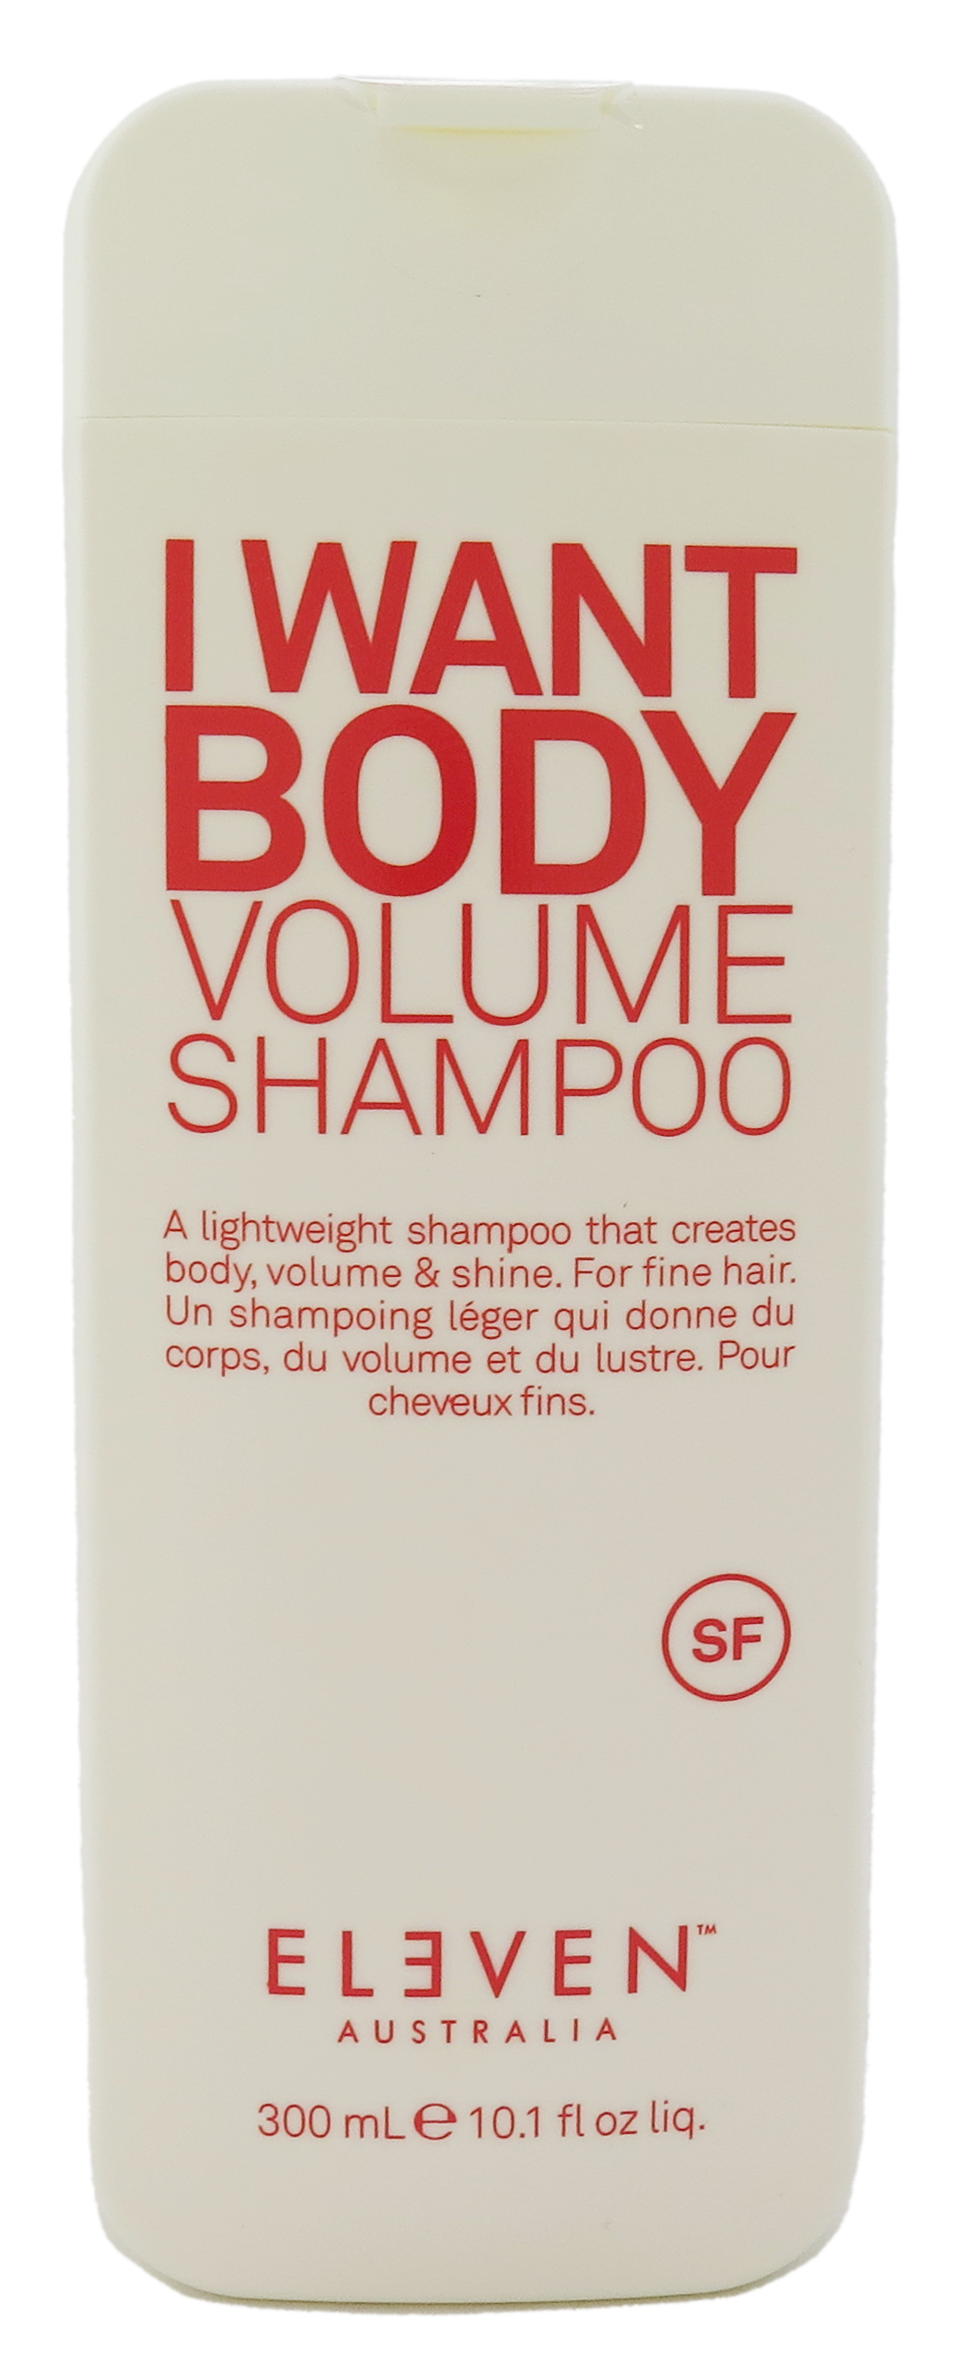 Eleven Australia I Want Body Volume Shampoo 10.1 fl oz 